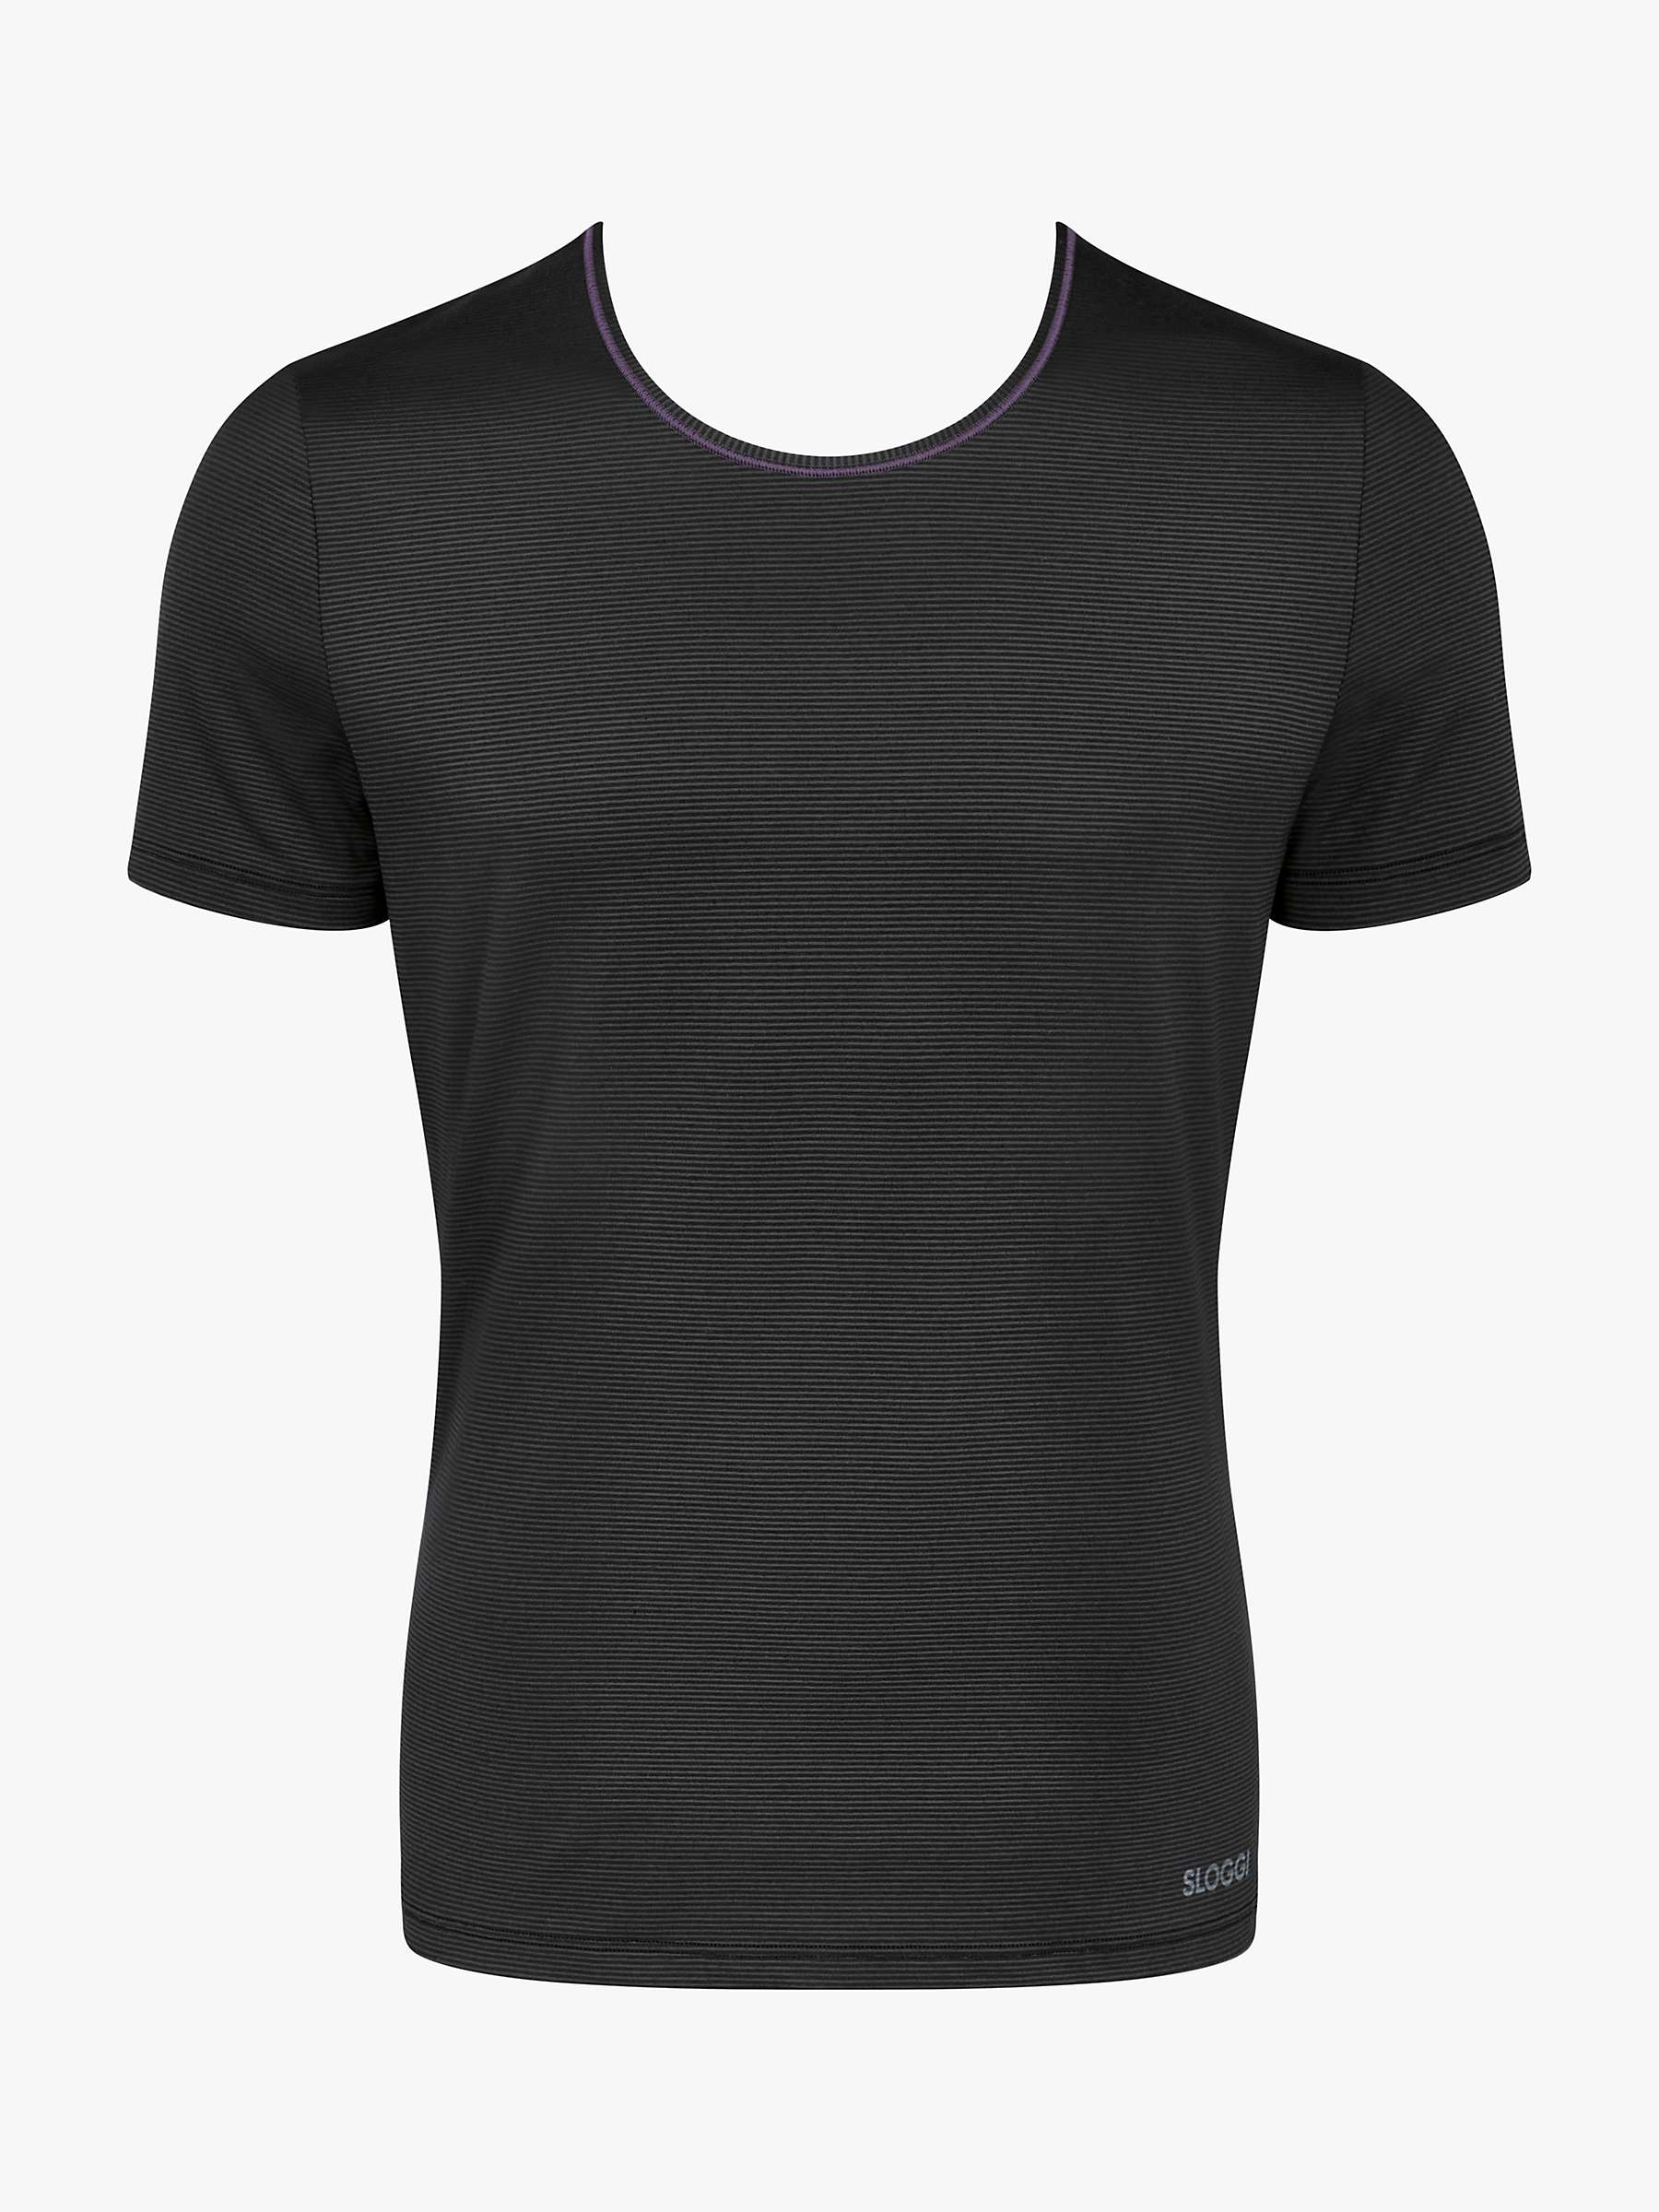 Buy sloggi EVER Cool Short Sleeve Top, Black Online at johnlewis.com